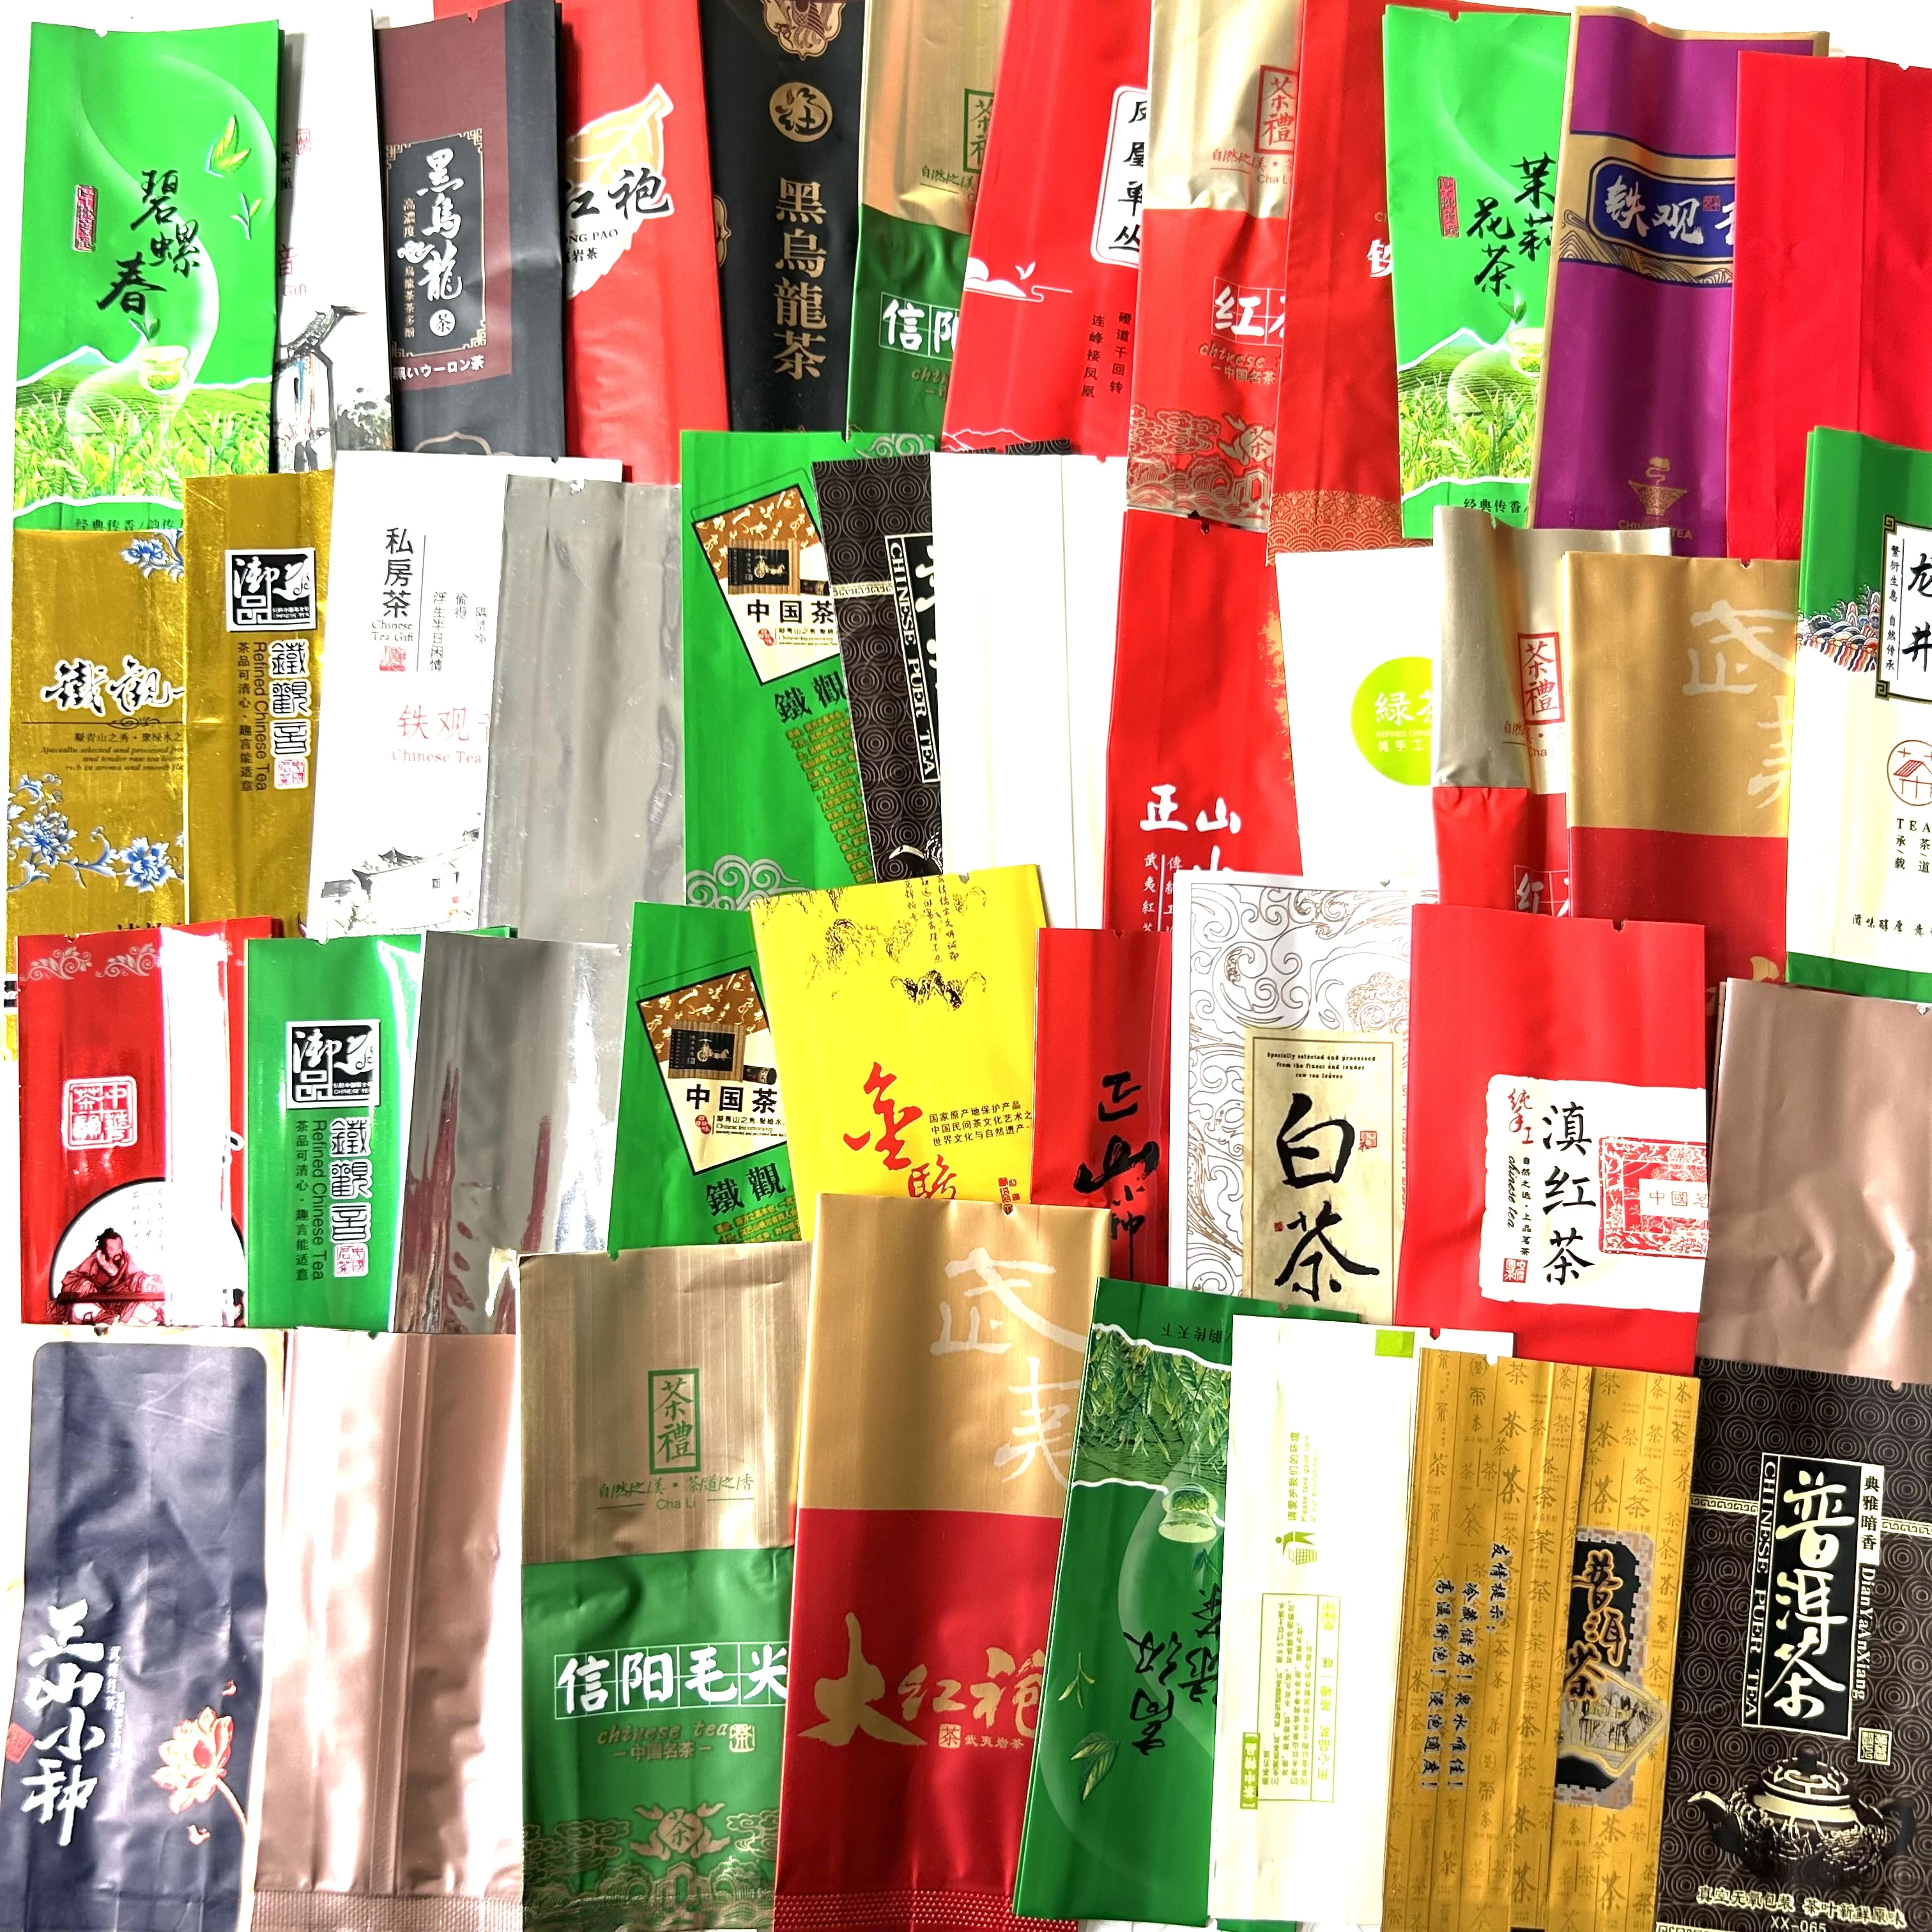 

36 различных стандартных чайных пакетиков, включая зеленый чай Oolong Pu-erh, чайный подарок, 250 г, Китайский Вакуумный фотобумажный пакет